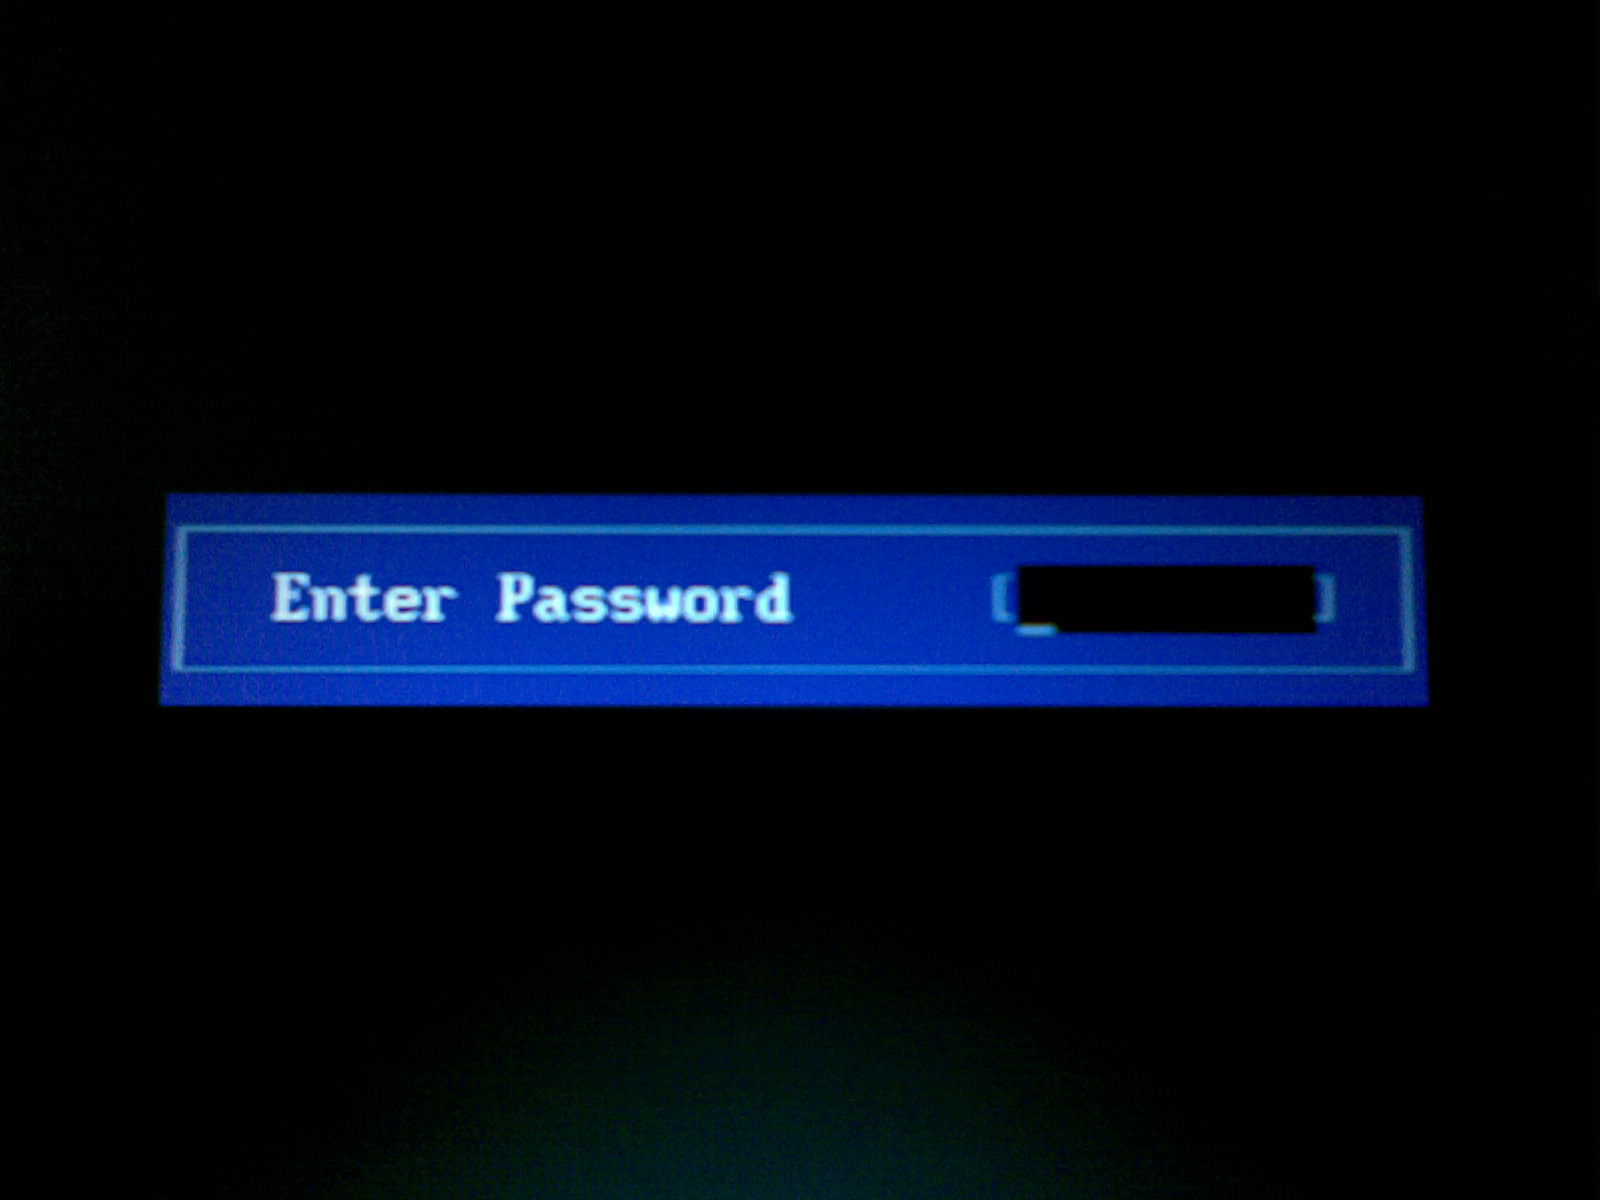 Enter v. Пароль на BIOS. Пароль при входе в биос. Биос enter password. Пароль на биос фото.